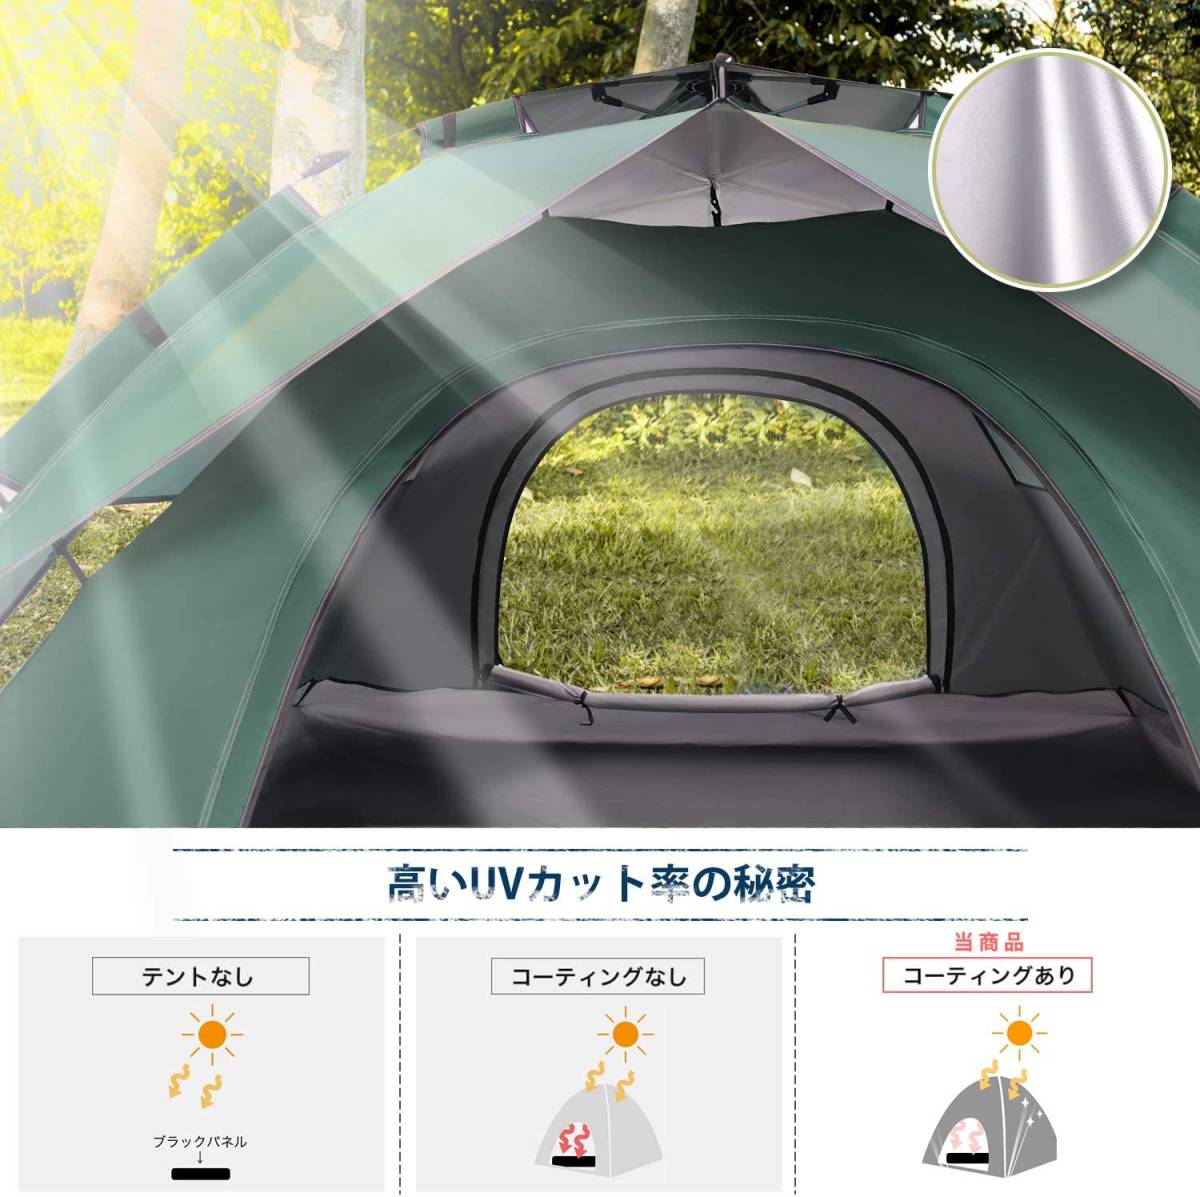 【テントG】新品未開封 ワンタッチテント 2-4人用 2重層 キャンプ UVカット 防水_画像2